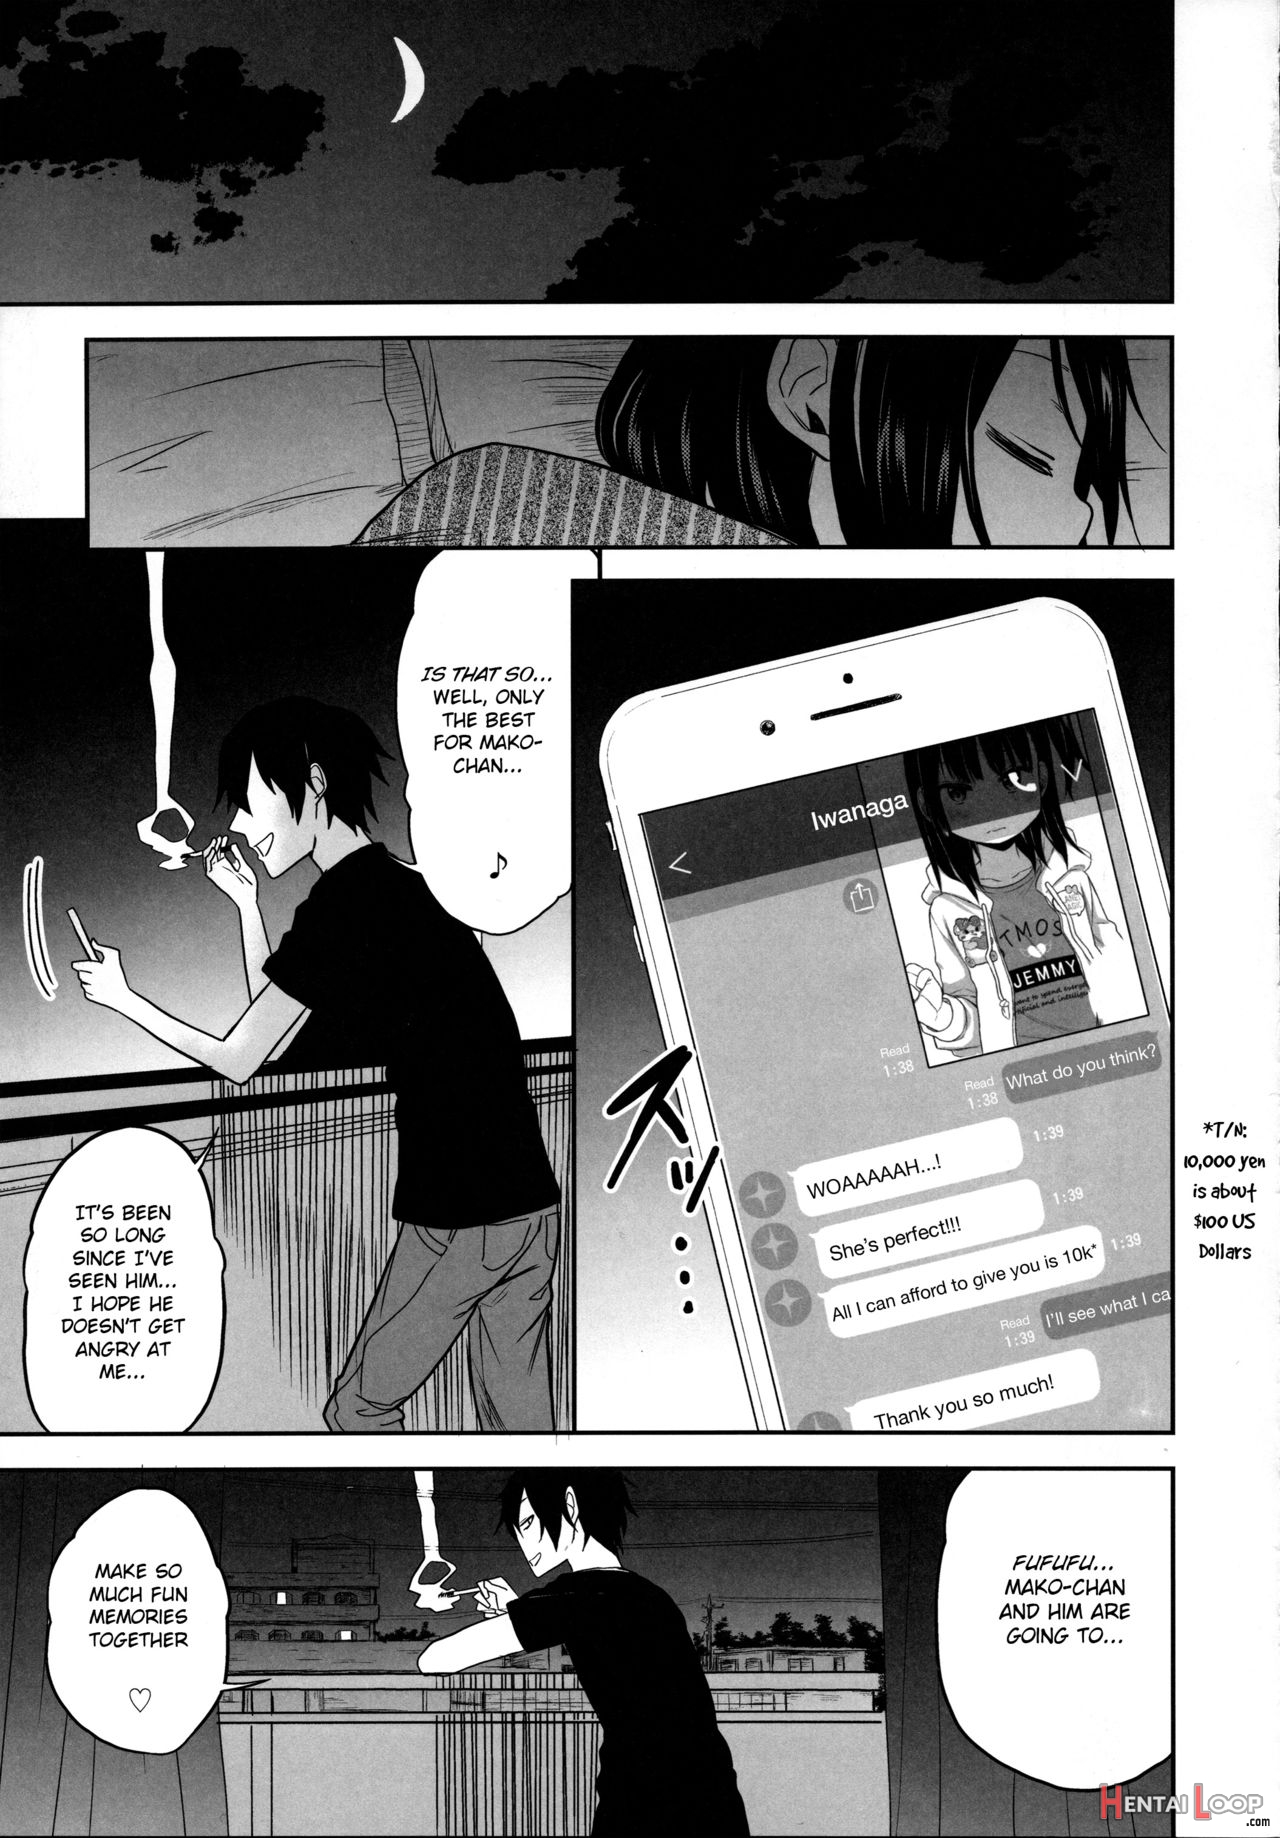 Tonari No Mako-chan Season 2 Vol. 1 page 9